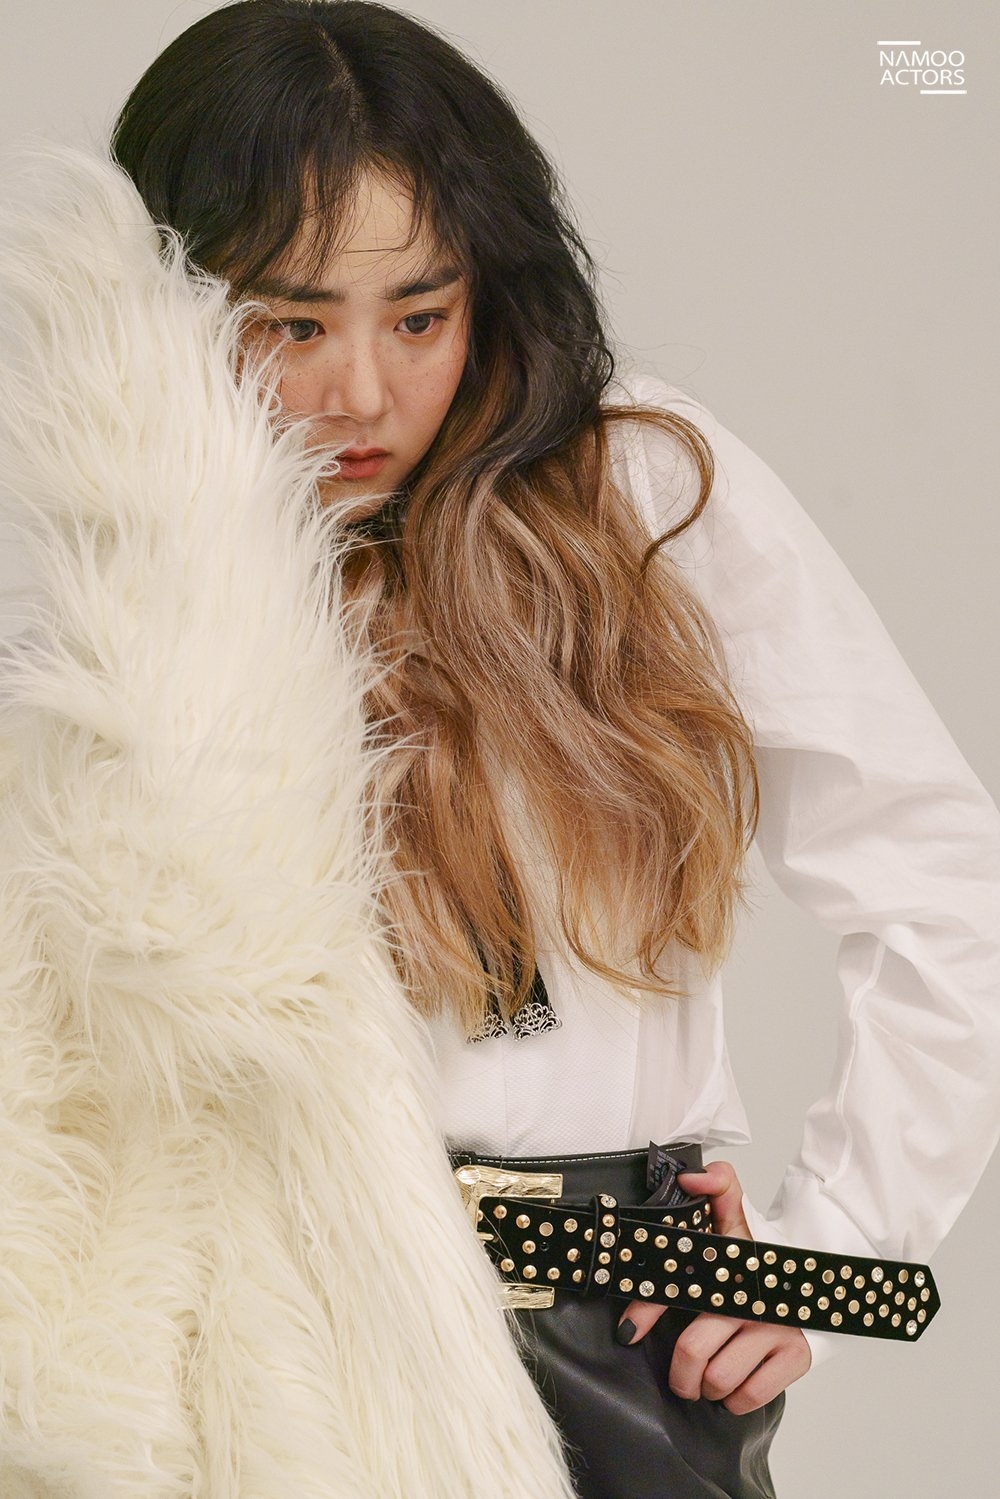 Moon Geun Young “lột xác” cá tính, chất ngất trong bộ ảnh tạp chí mới